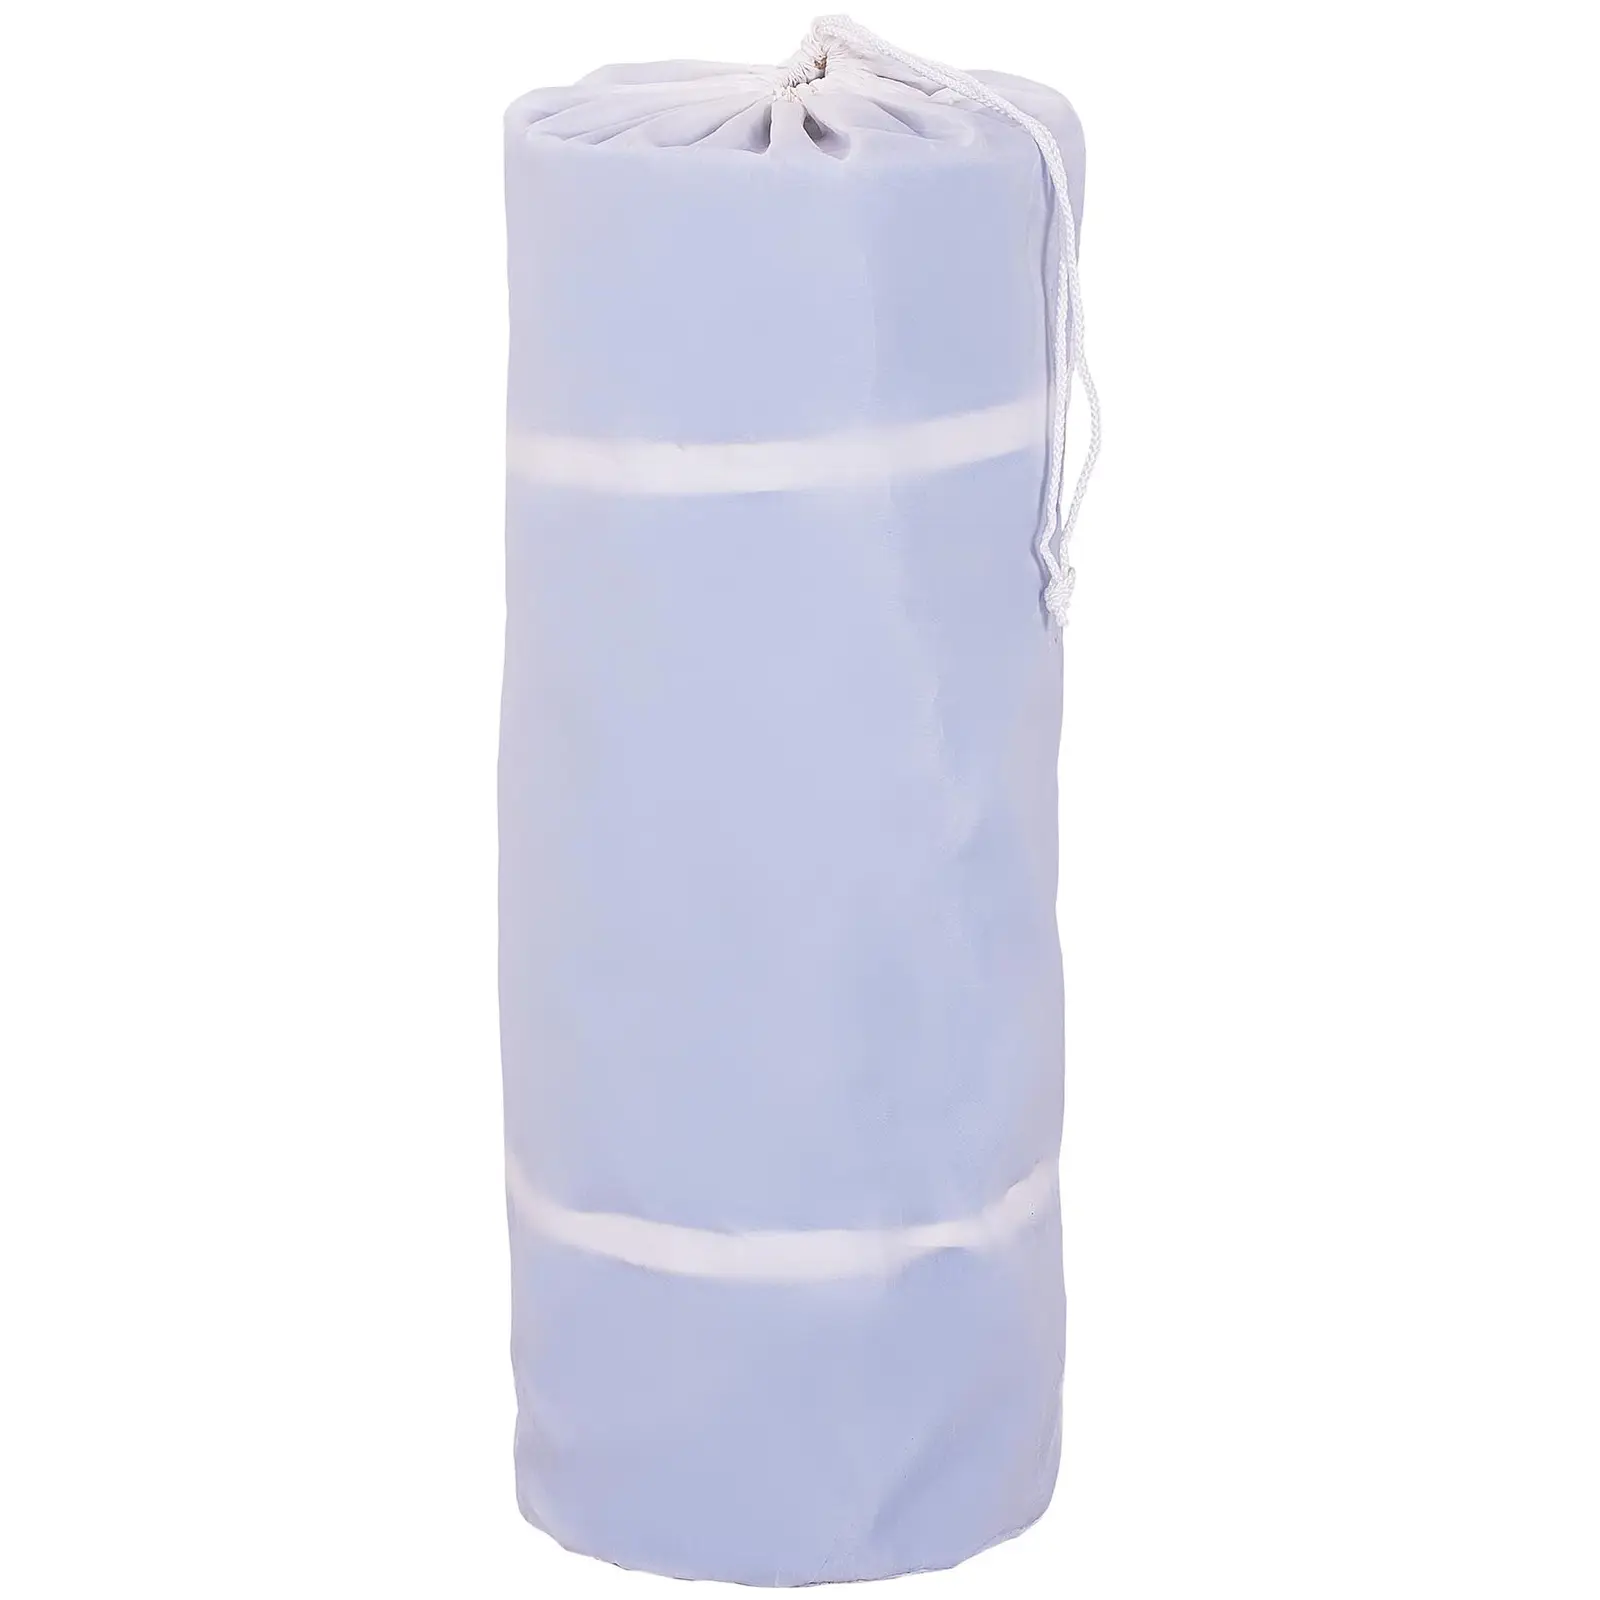 Colchoneta de gimnasia - 300 x 200 x 20 cm - 300 kg - azul/blanco